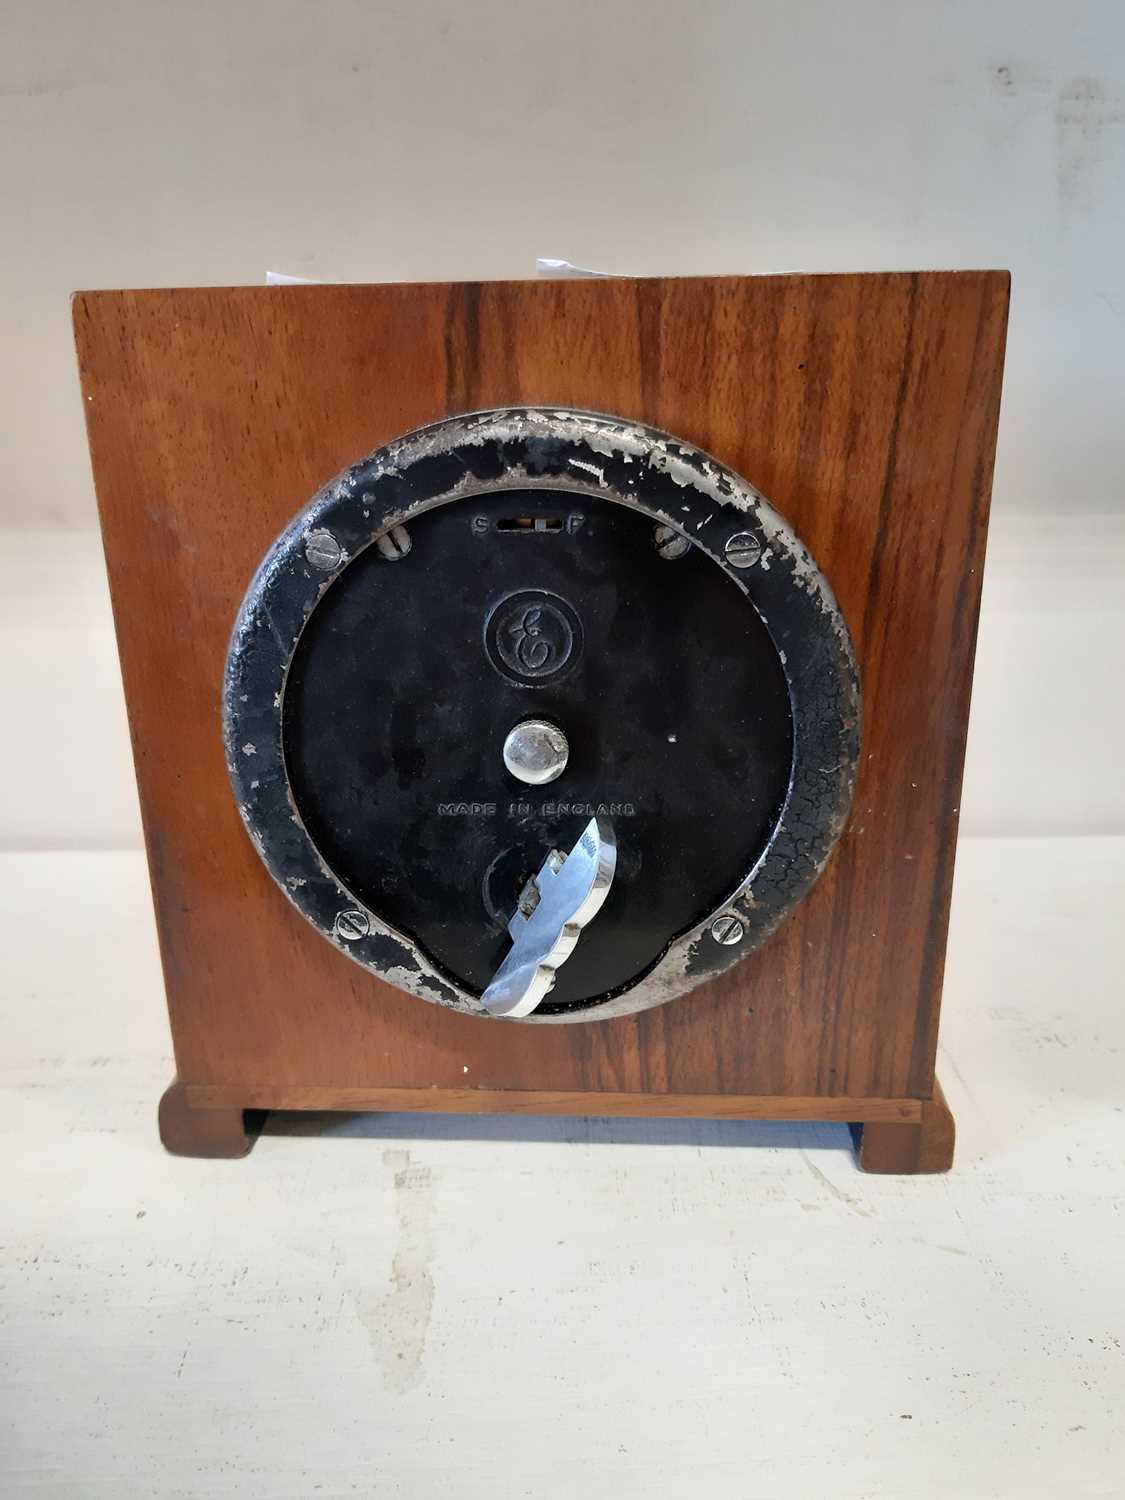 Elliott walnut cased mantel clock, - Image 3 of 6